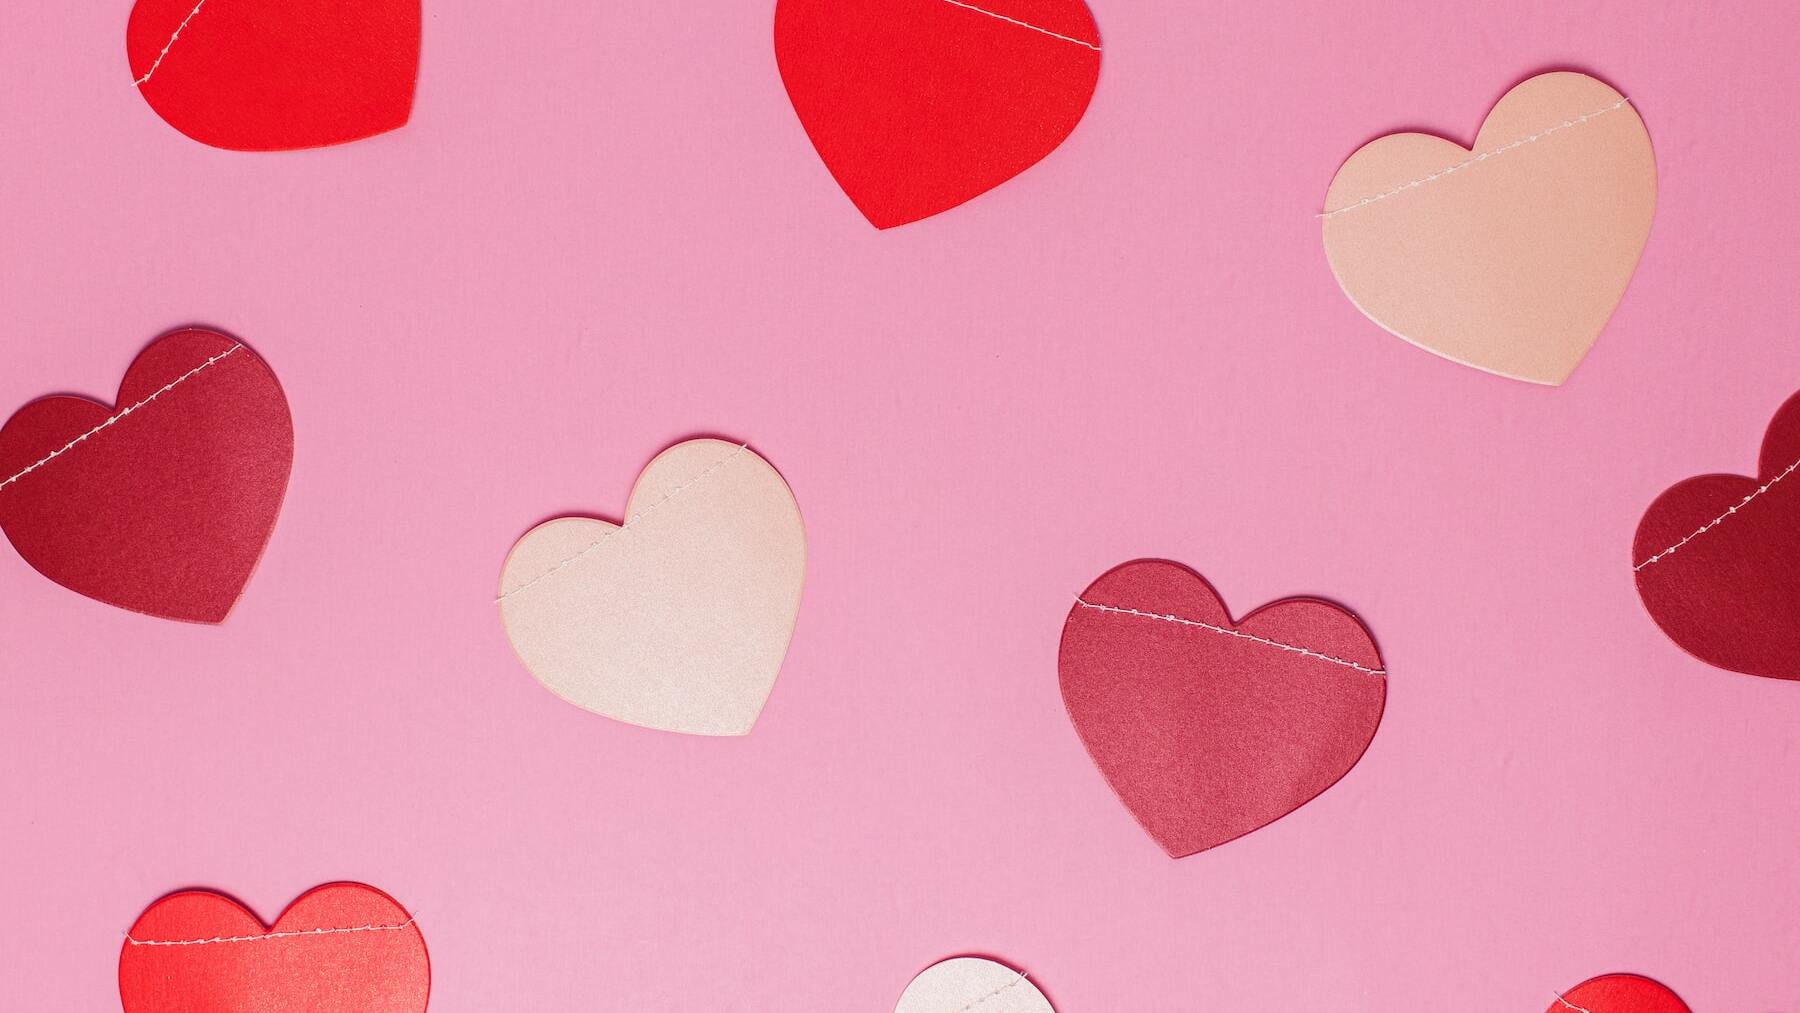 5 regalos originales para hacer en San Valentín